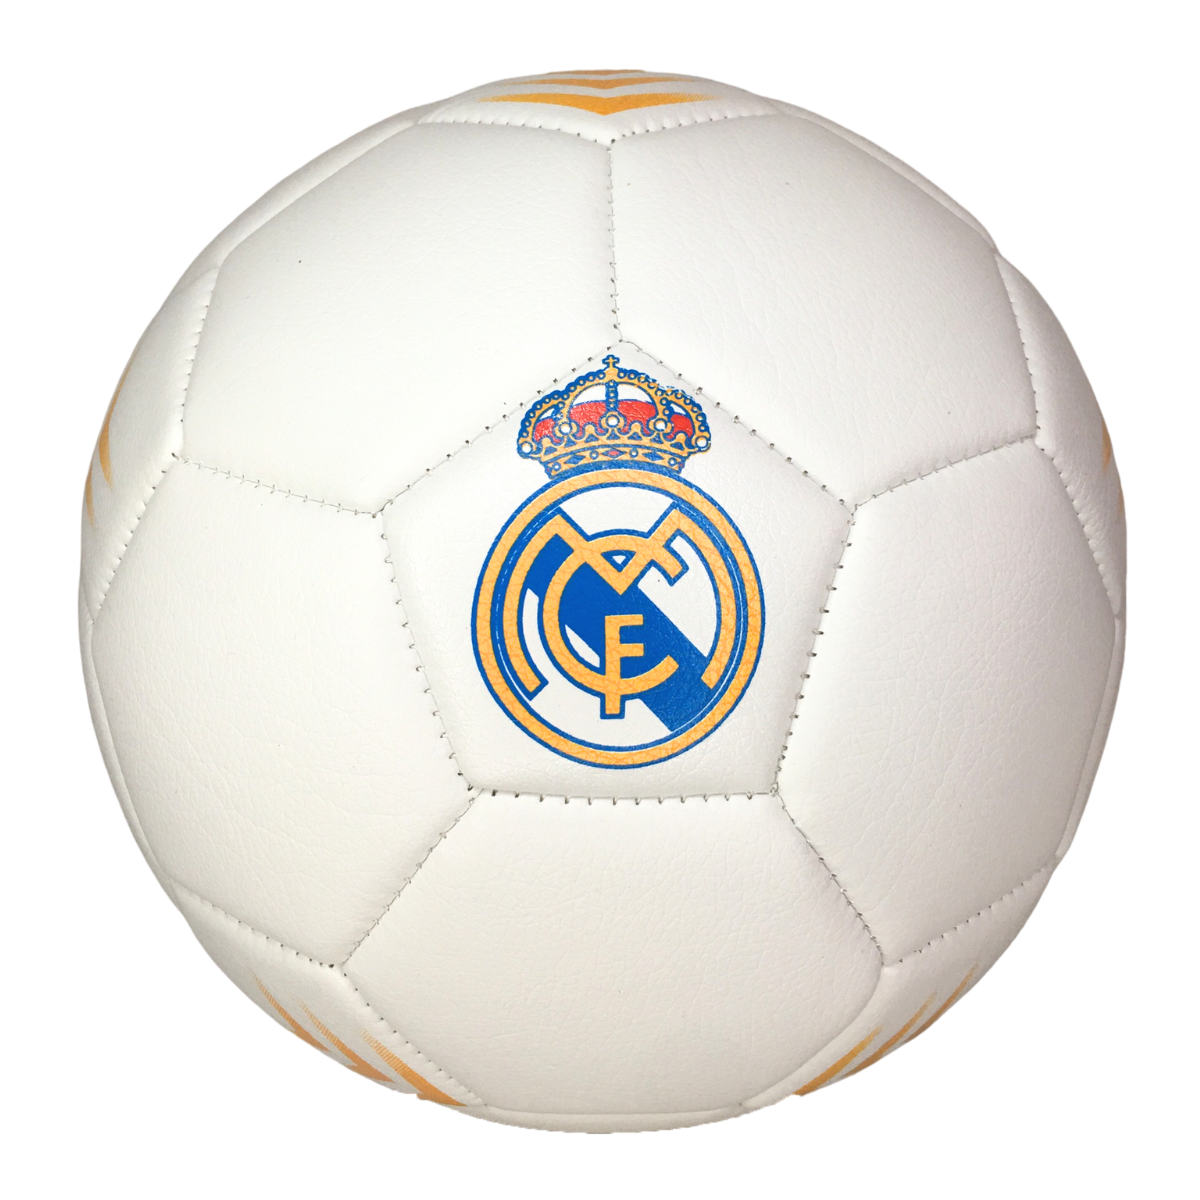 RhinoxGruop - Balón de fútbol oficial del Real Madrid, tamaño completo 5  (gris L1Y43)